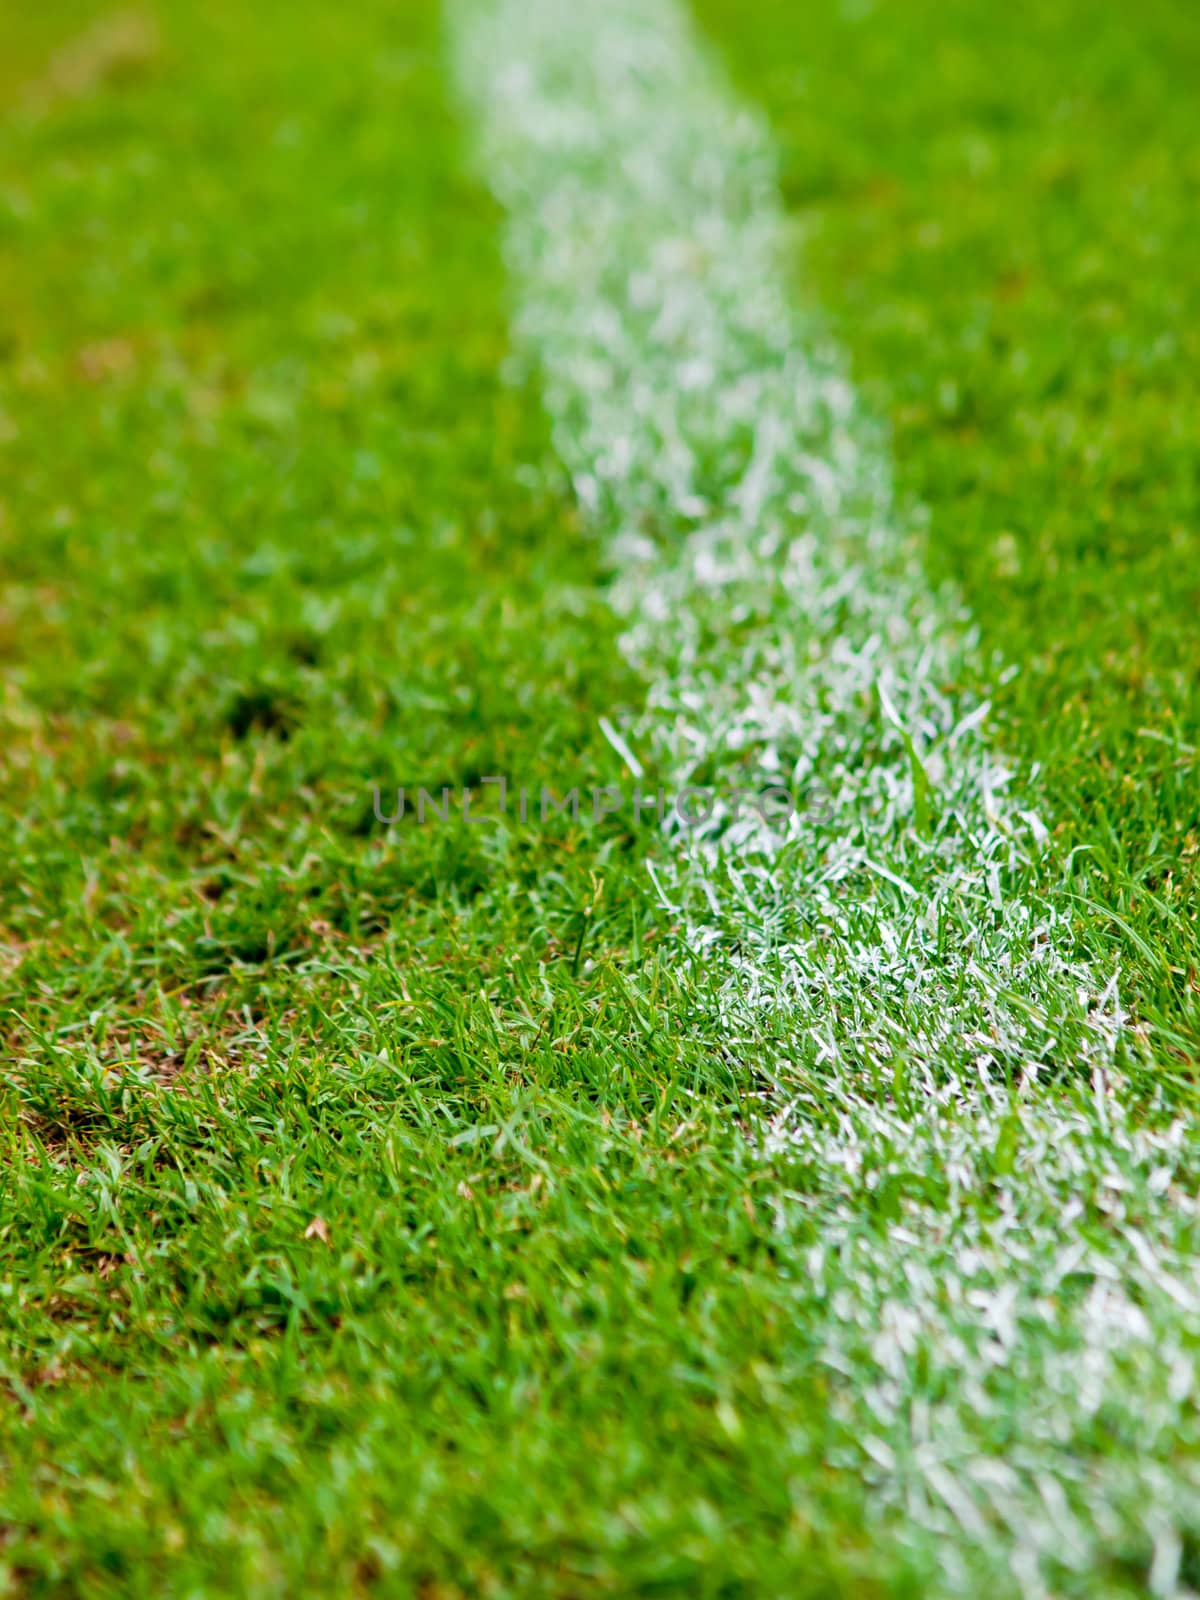 White stripe on the green soccer field  by jakgree